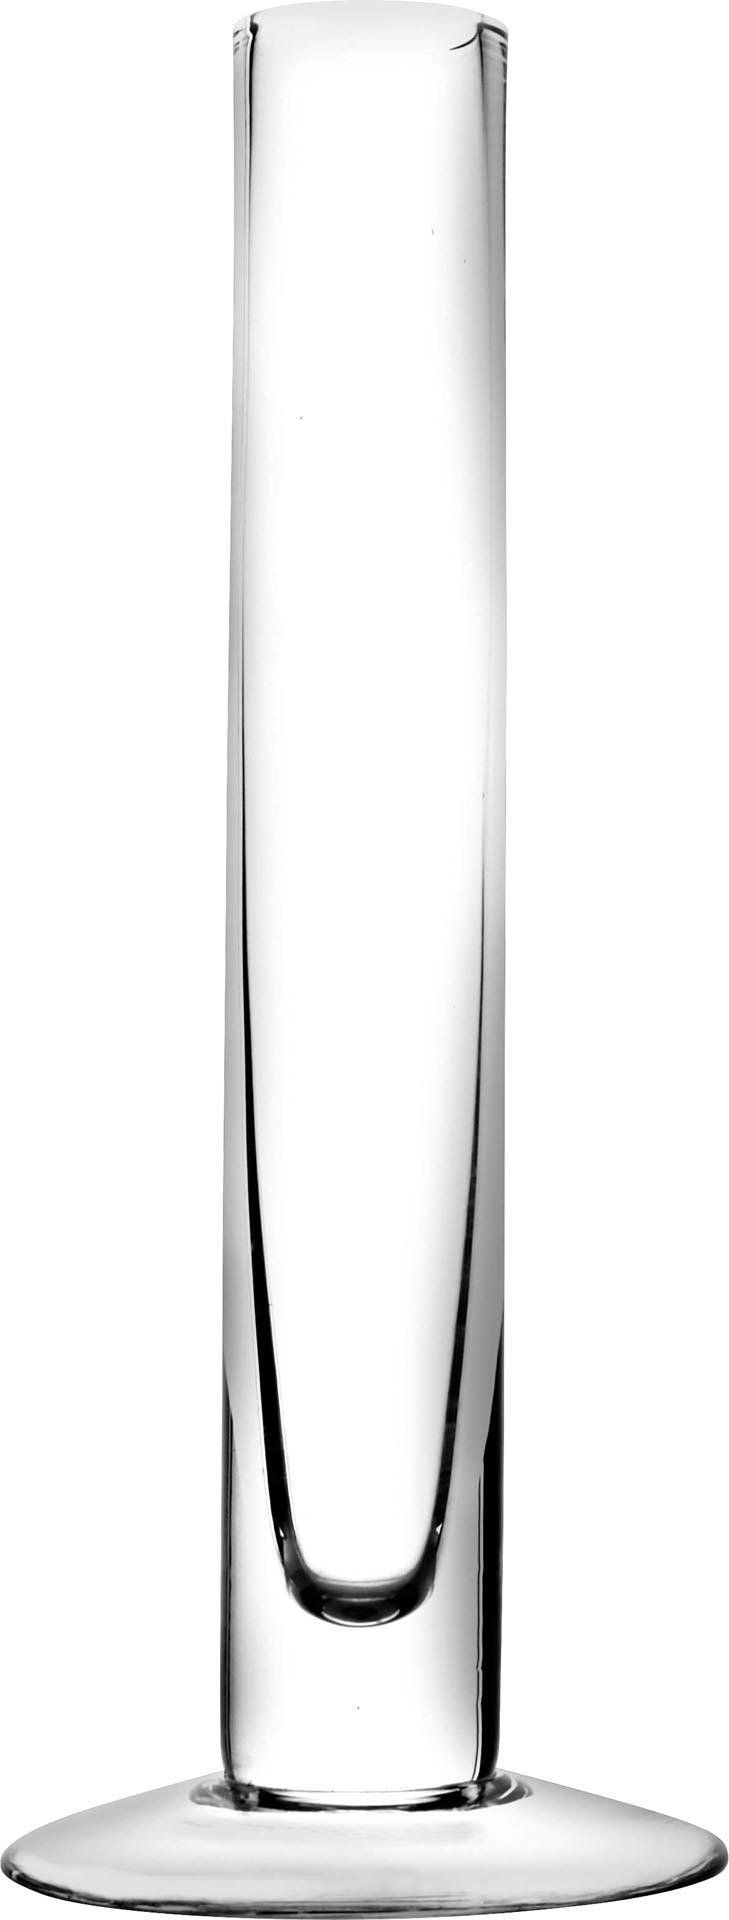 Glasvase "Solifleur" 20 cm / Ø 3 cm # 11237 - Standfuß: Ø 8 cm